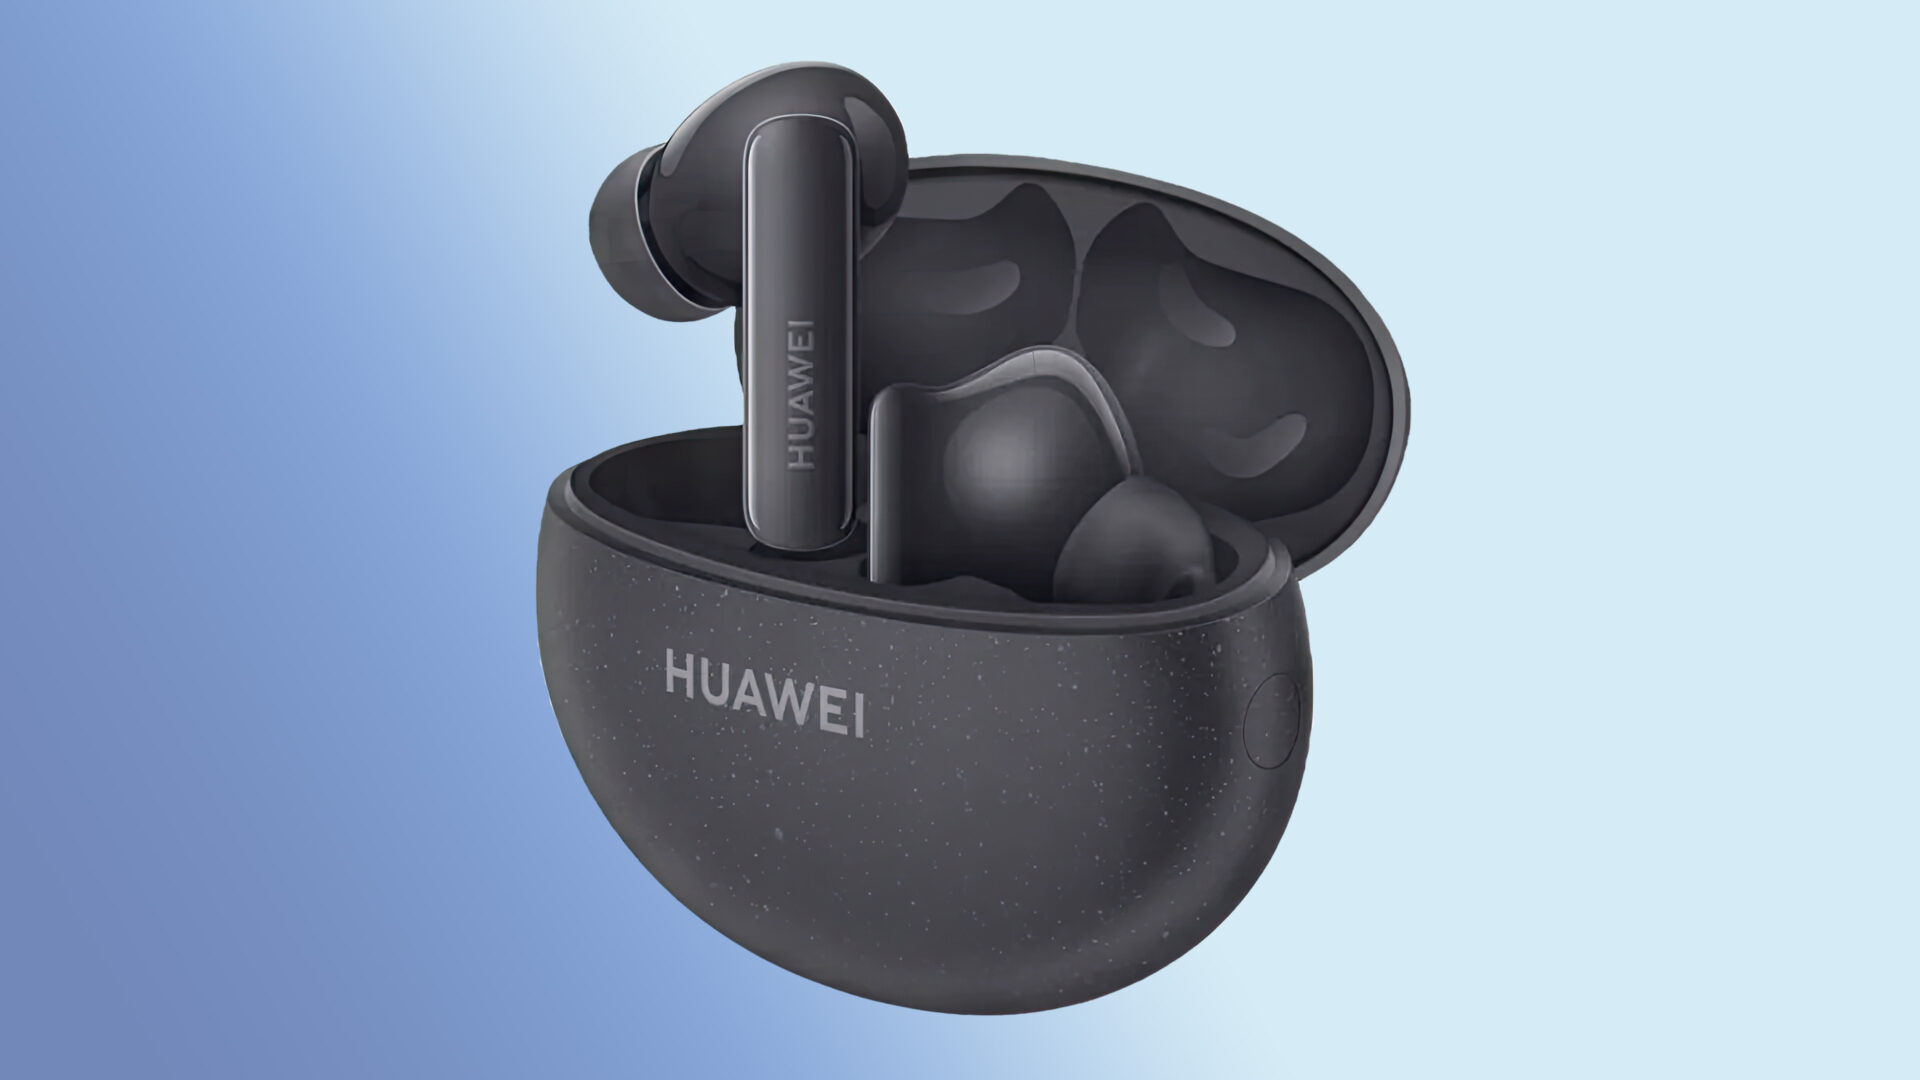 Enda bedre budsjettpropper fra Huawei?